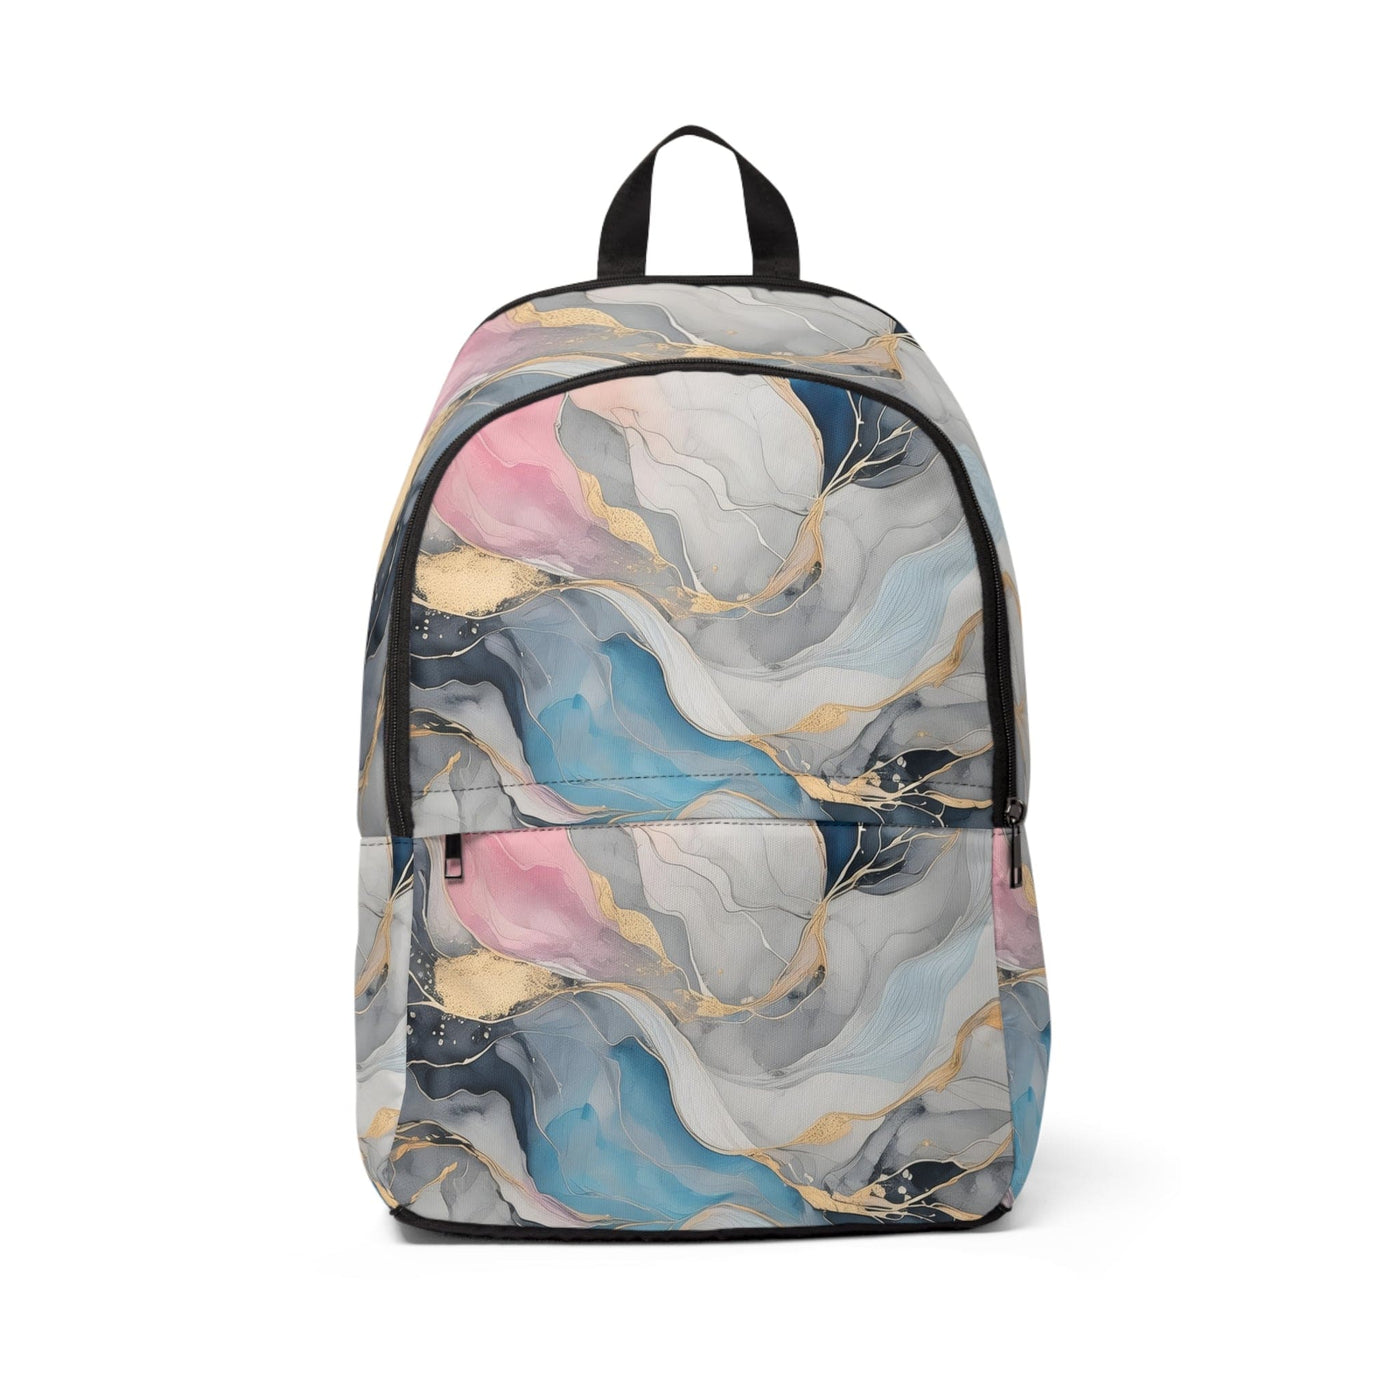 Fashion Backpack Waterproof Marble Cloud Of Grey Pink Blue 63389 - Bags